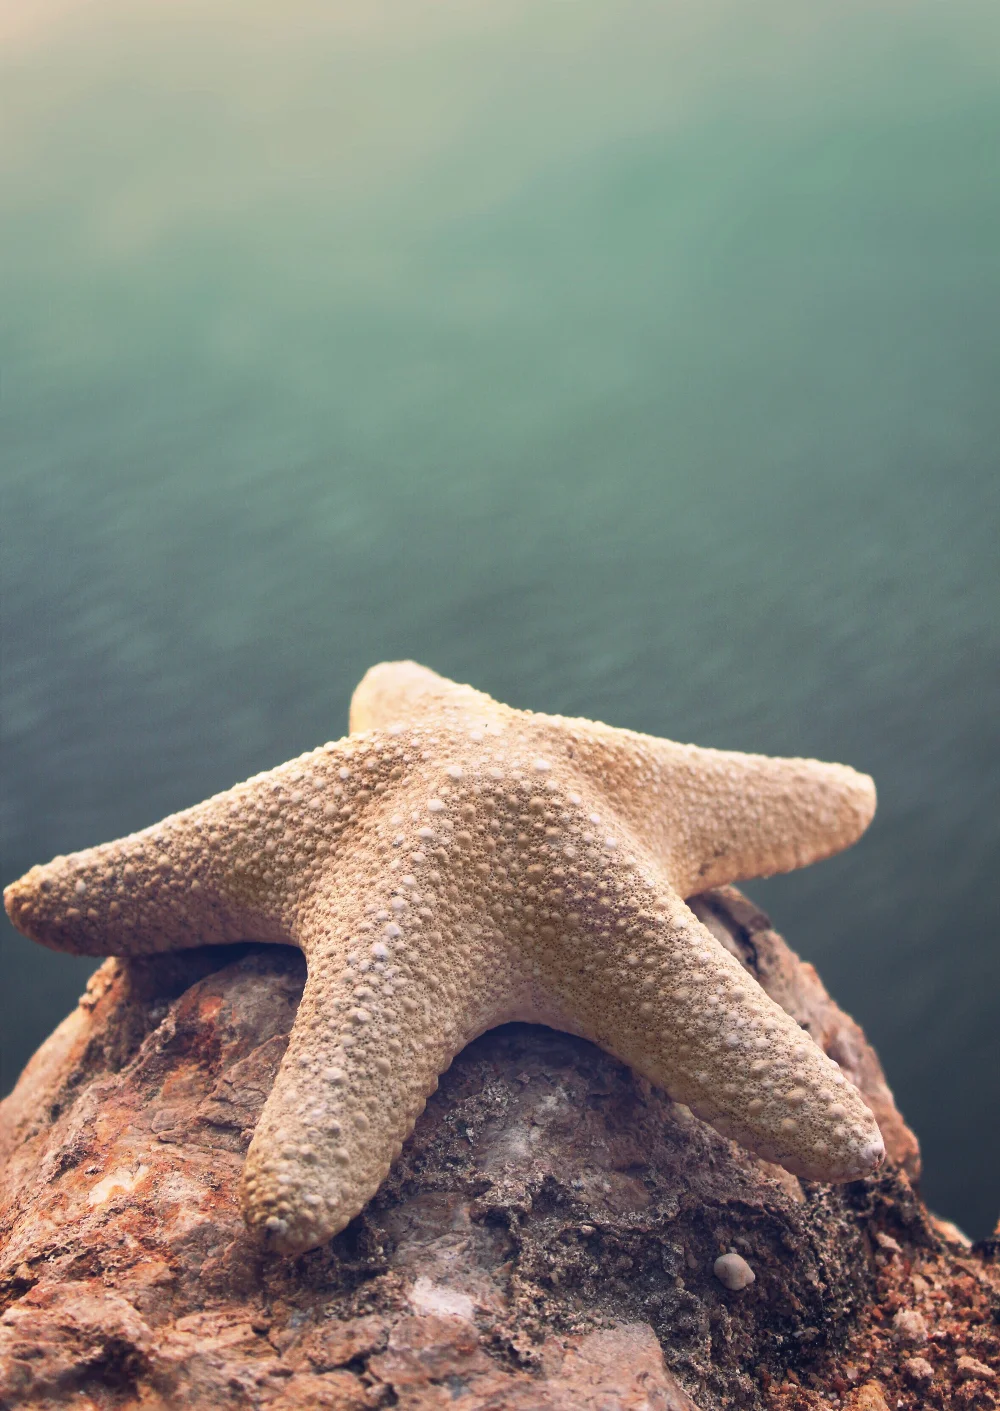 #rockysurface #starfish #seawaterbackground #nature